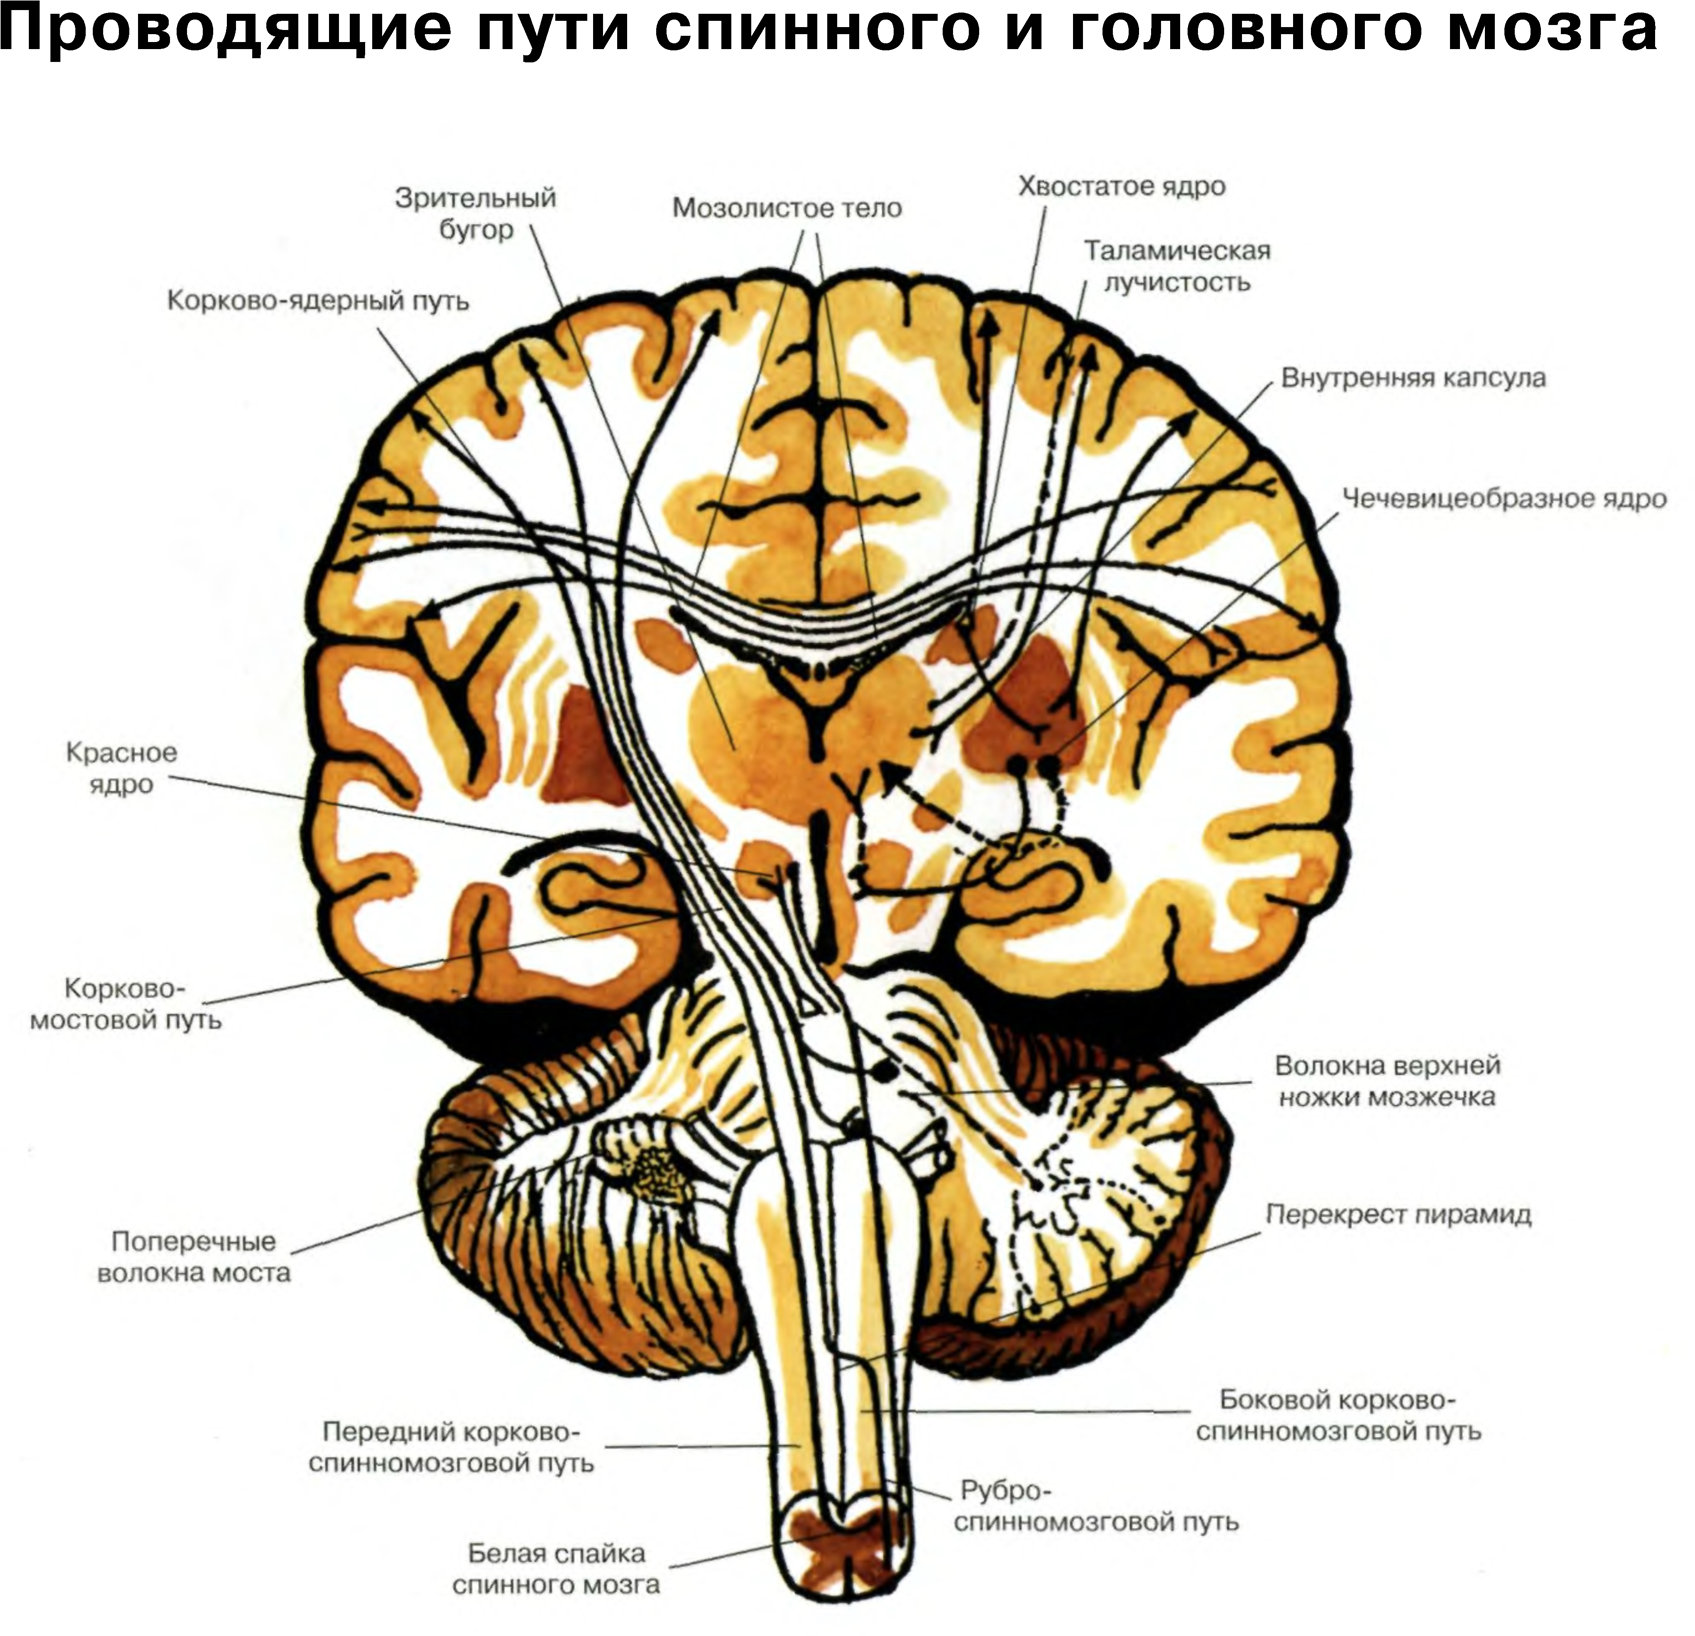 Местоположение проводящий. Проводящие пути головного мозга восходящие и нисходящие. Чувствительные проводящие пути спинного и головного мозга анатомия. Схему восходящих путей спинного и головного мозга.. Проводящие пути спинной мозг анатомия строение.